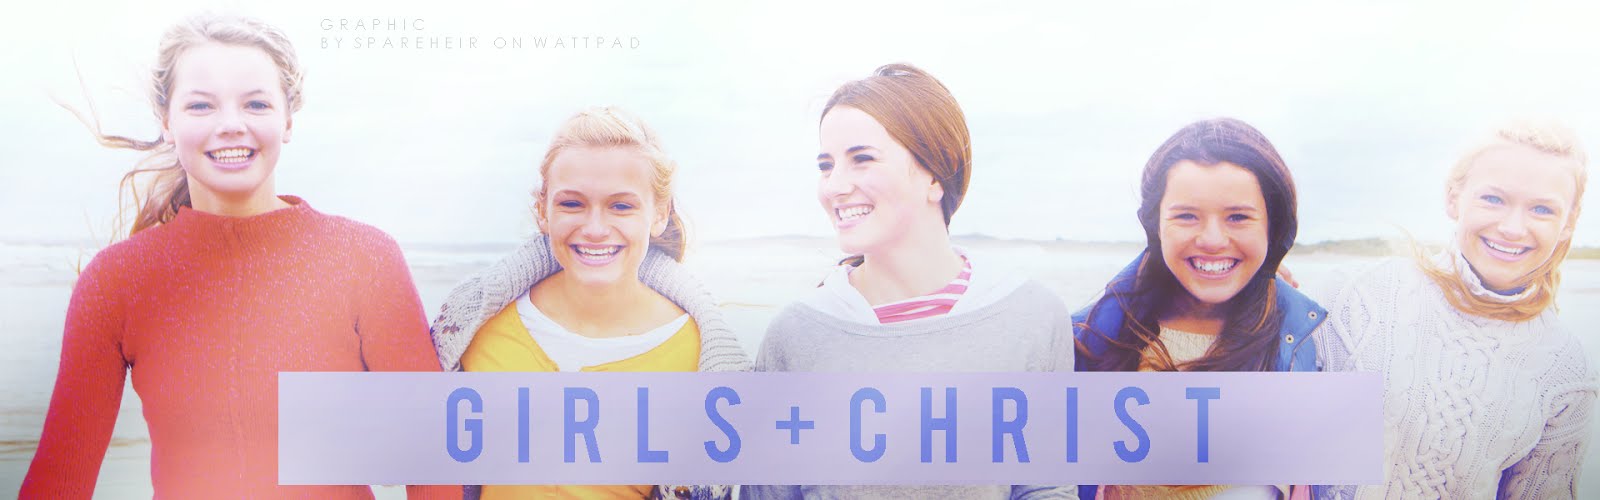 girls+christ